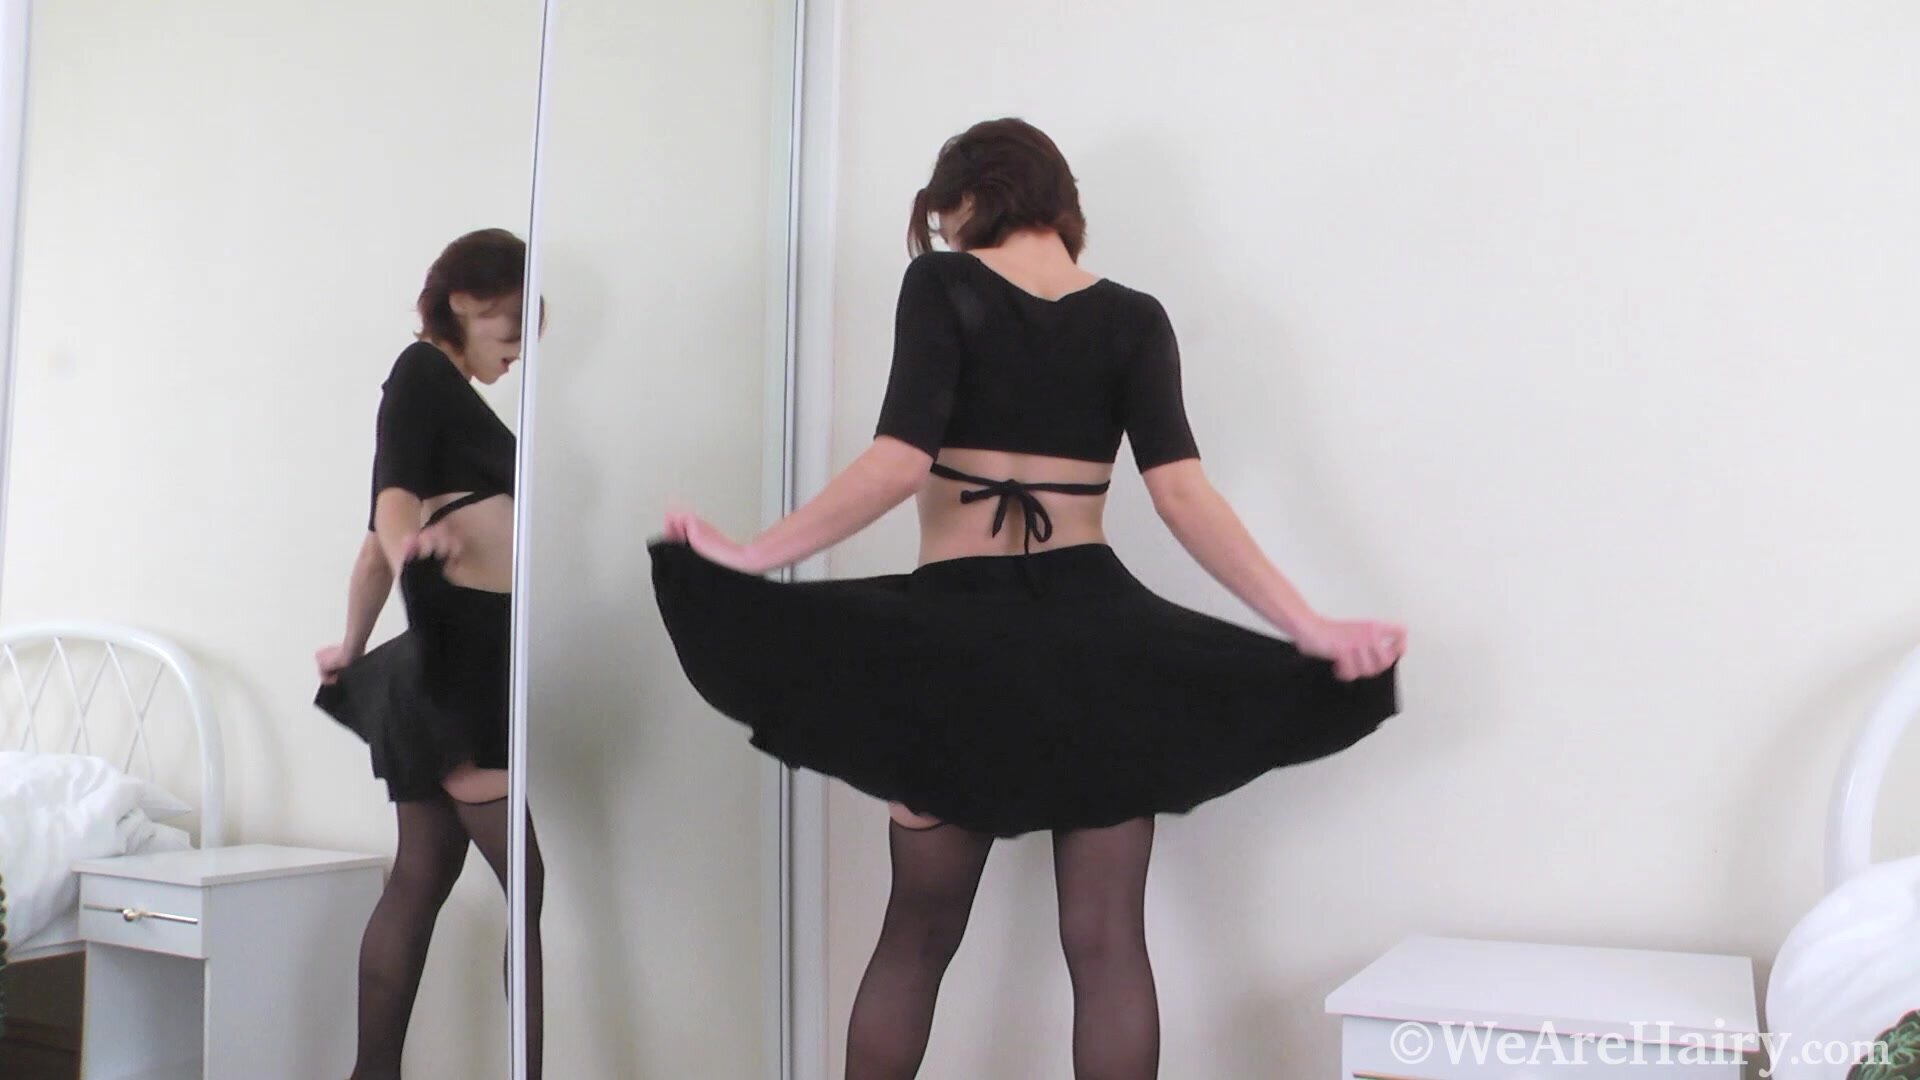 WeAreHairy - Chrystal Mirror - Black Skirt Black Top